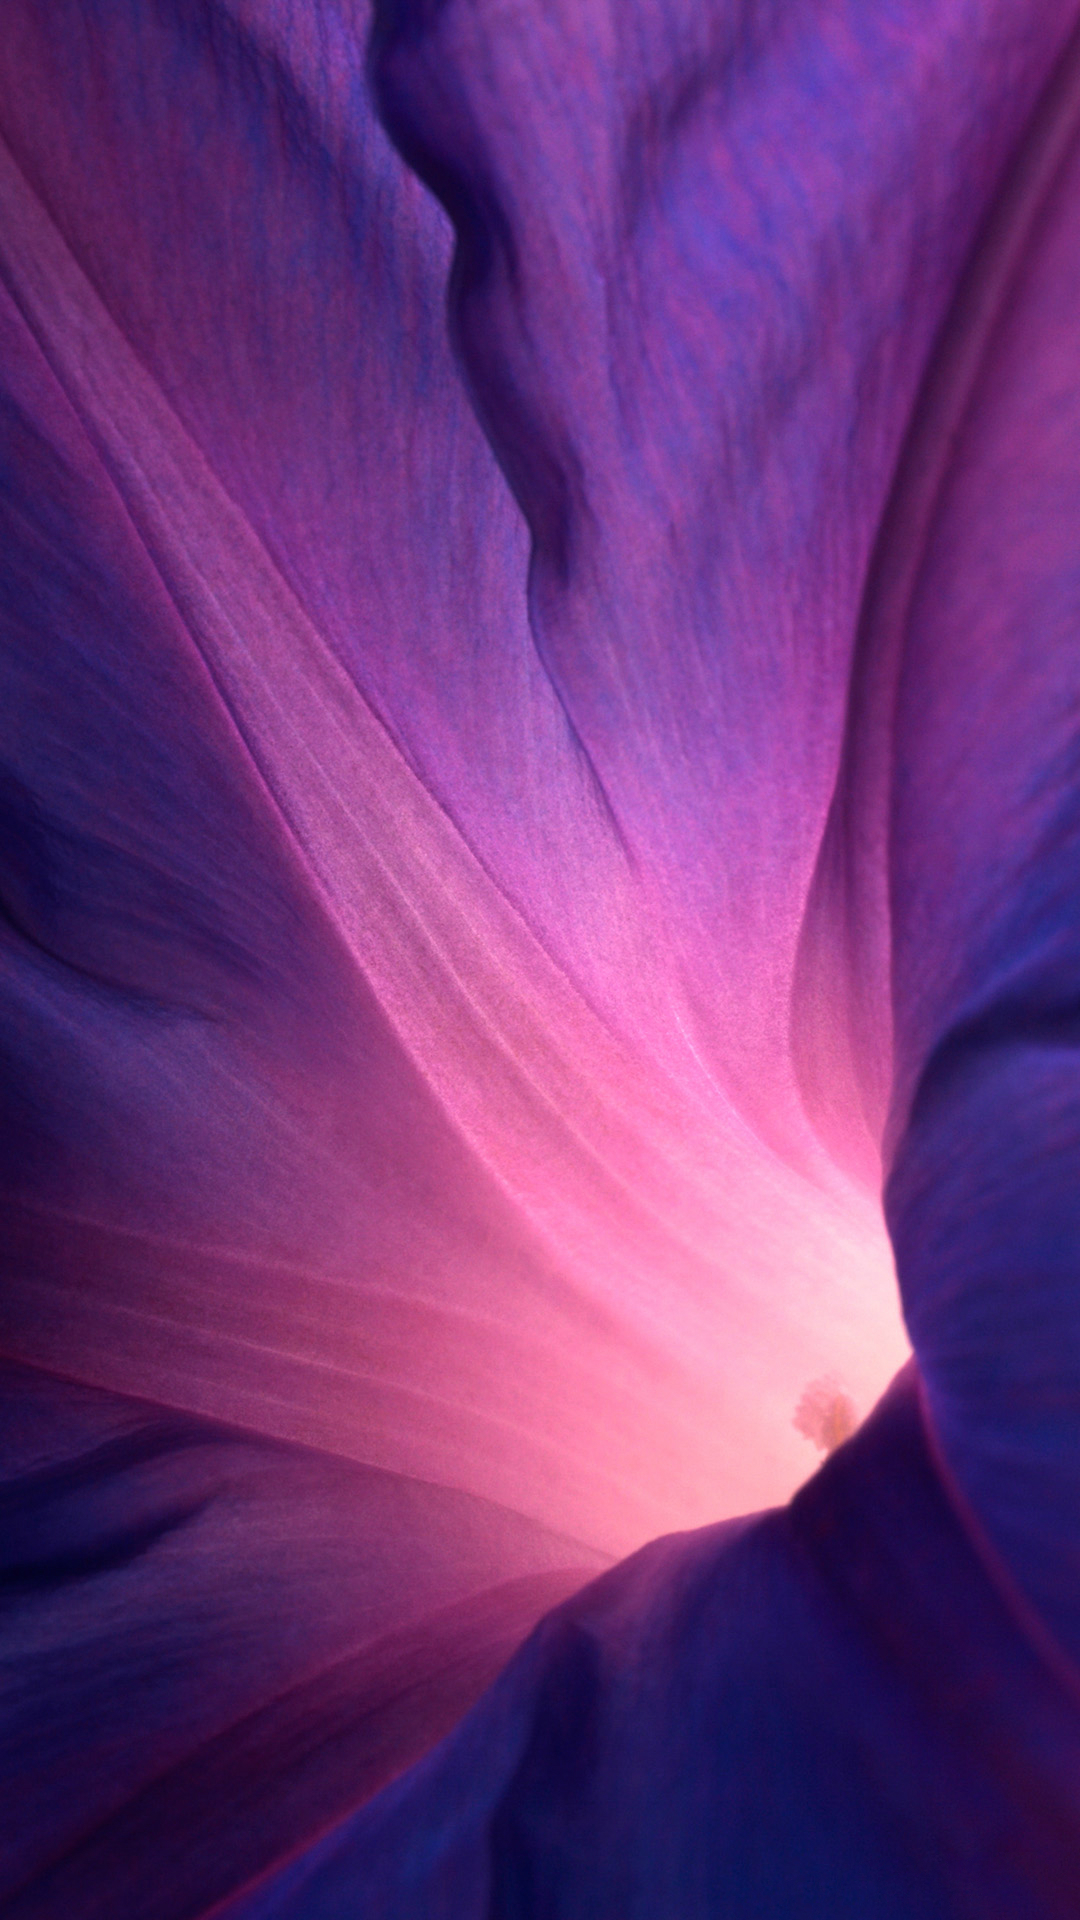 Flower Lockscreen iPhone Wallpaper